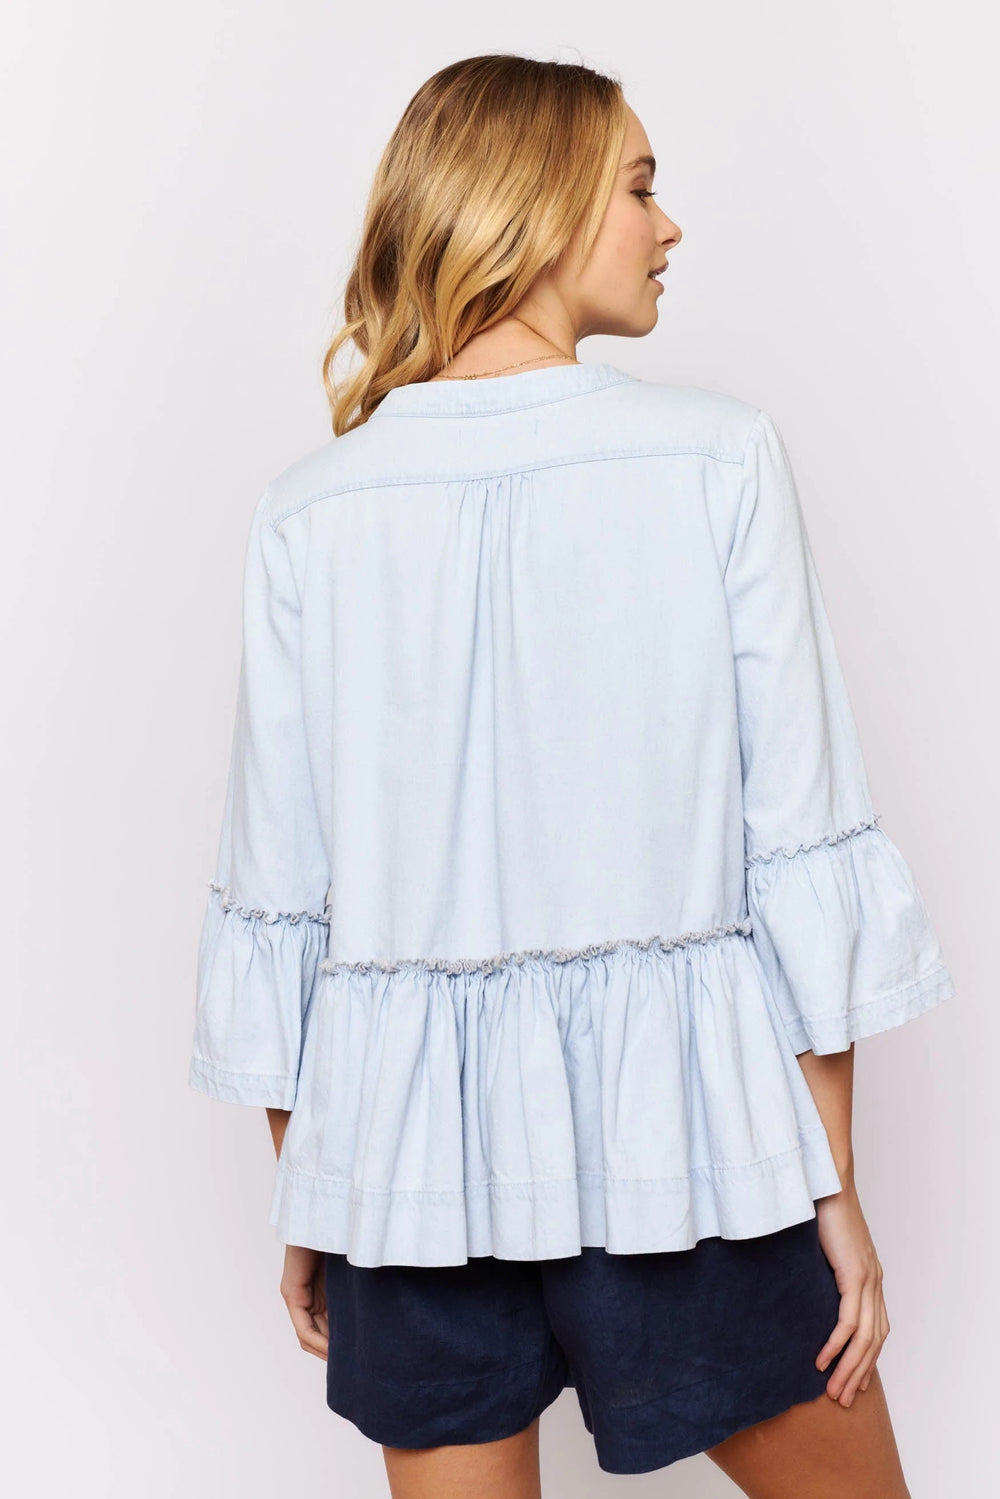 Temptress Top - Pale Blue Denim blouse Alessandra   